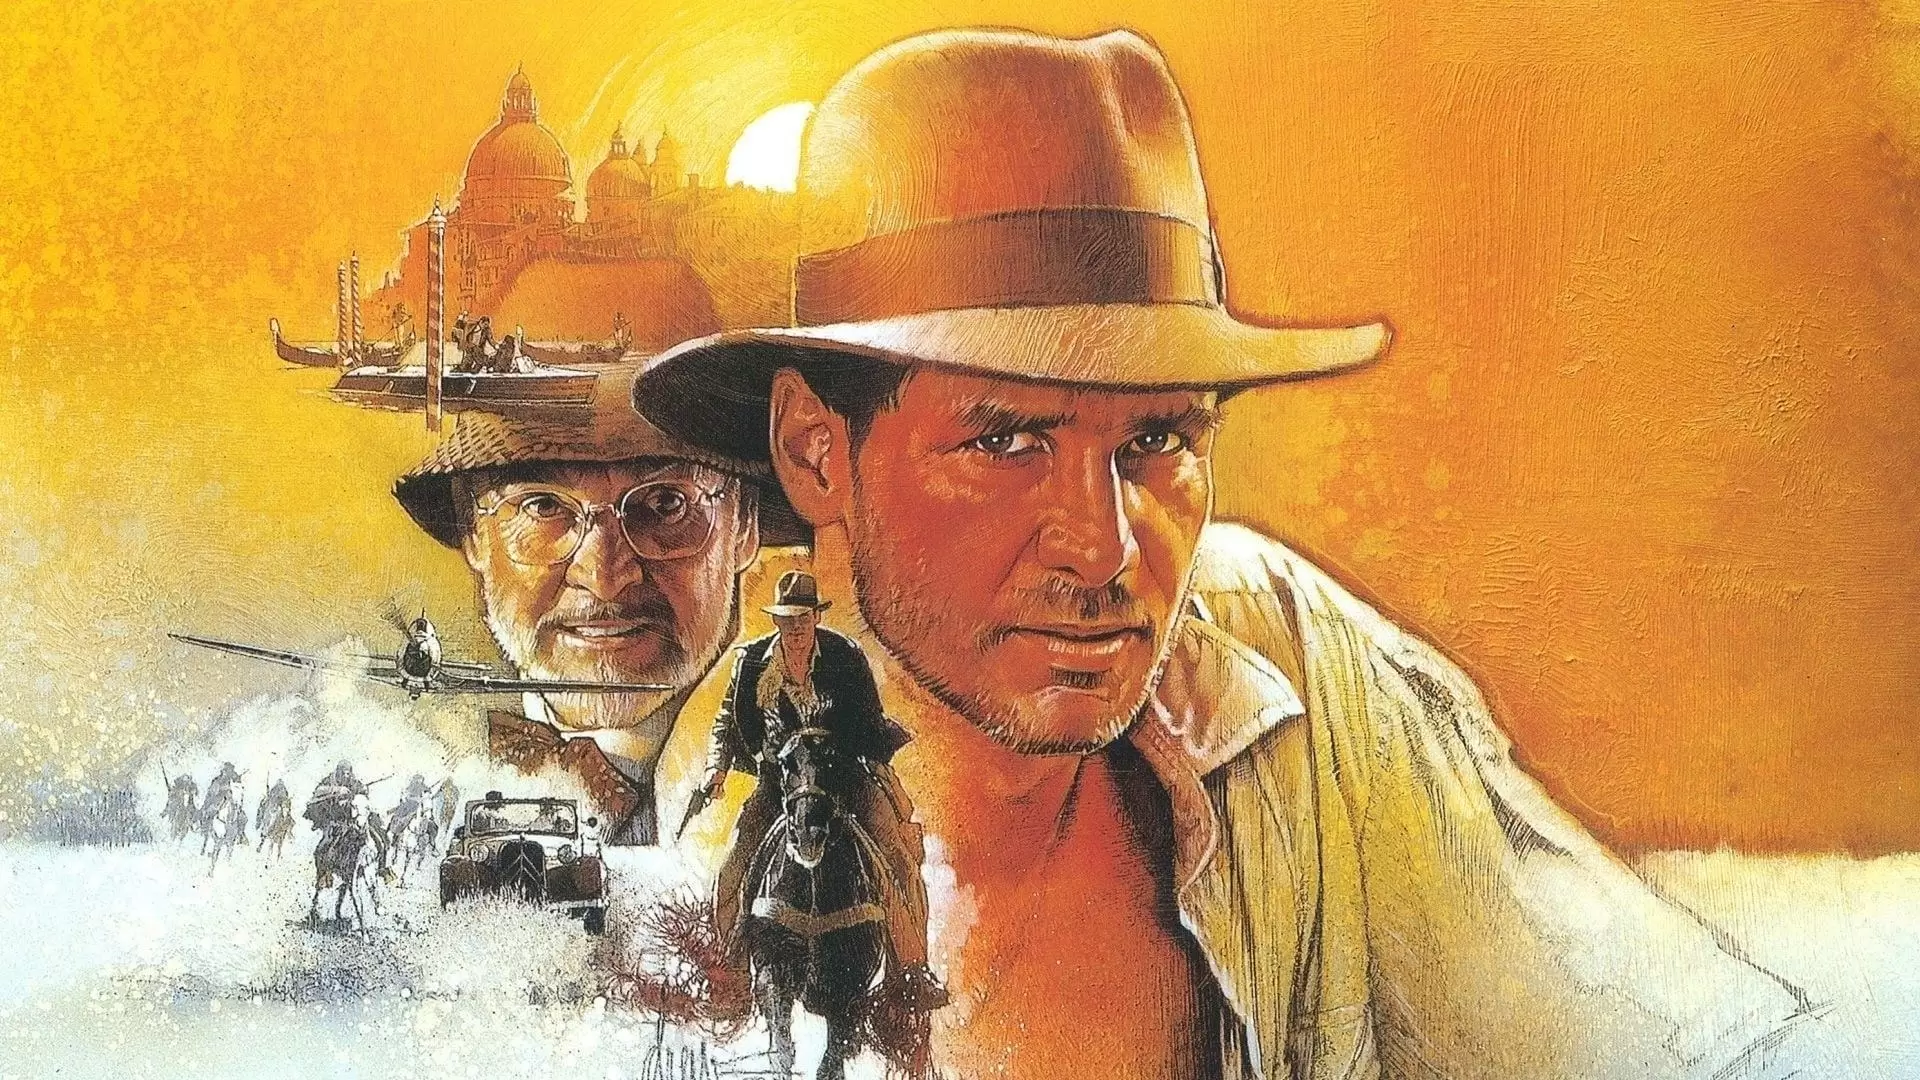 دانلود فیلم Indiana Jones and the Last Crusade 1989 (ایندیانا جونز و آخرین جنگ صلیبی) با زیرنویس فارسی و تماشای آنلاین